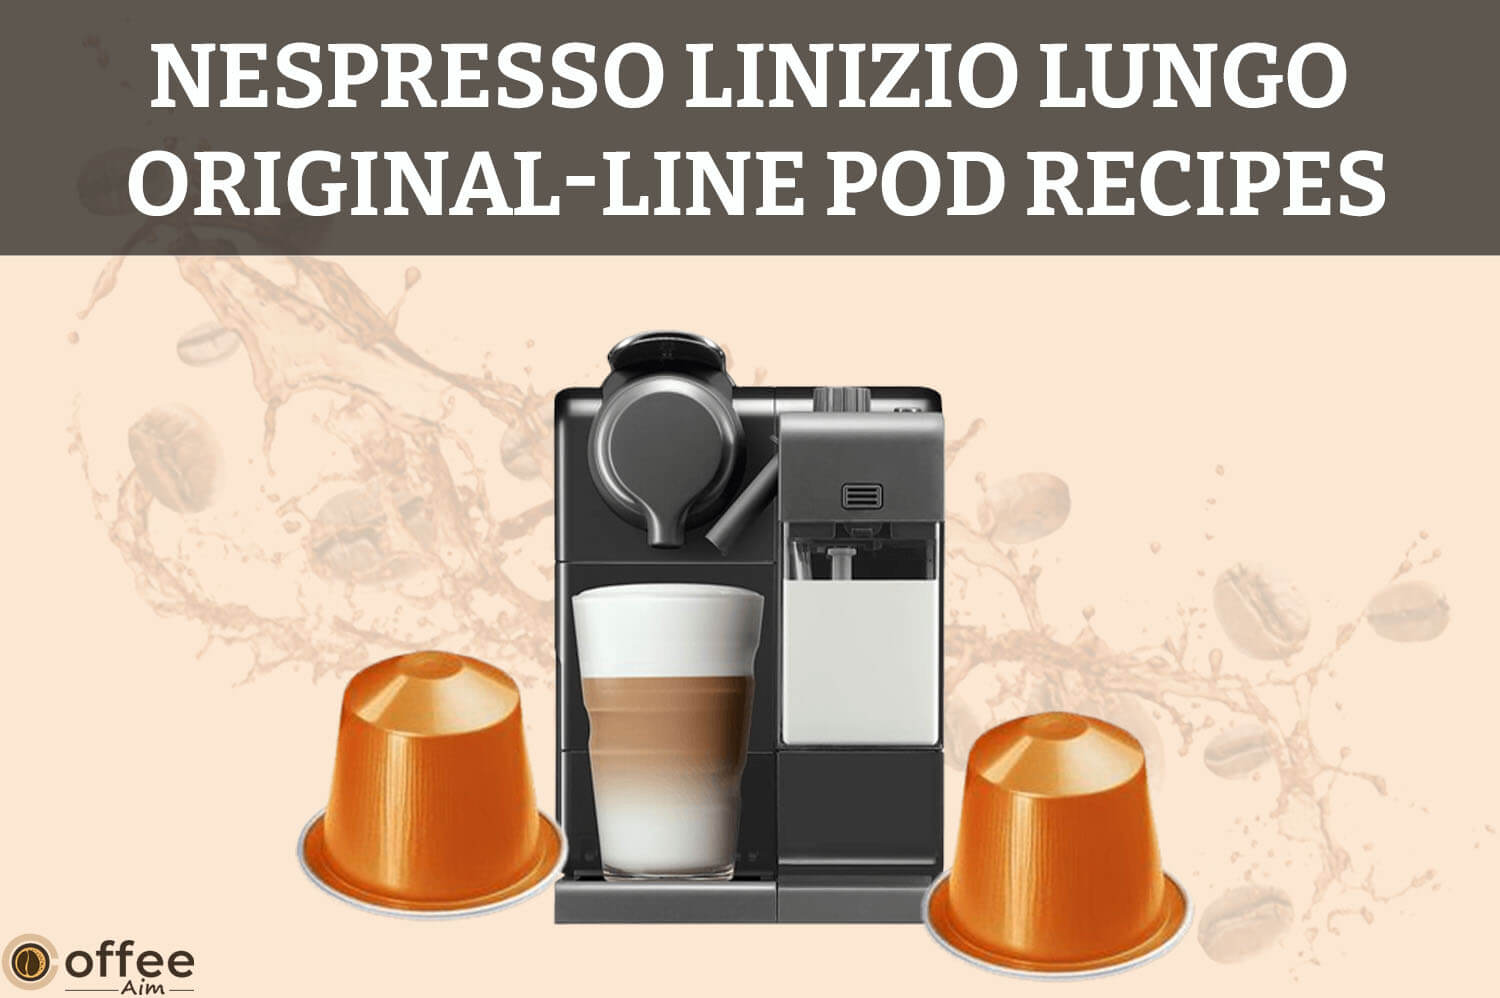 Nespresso-Linizio-Lungo-Original-Line-Pod-Recipes